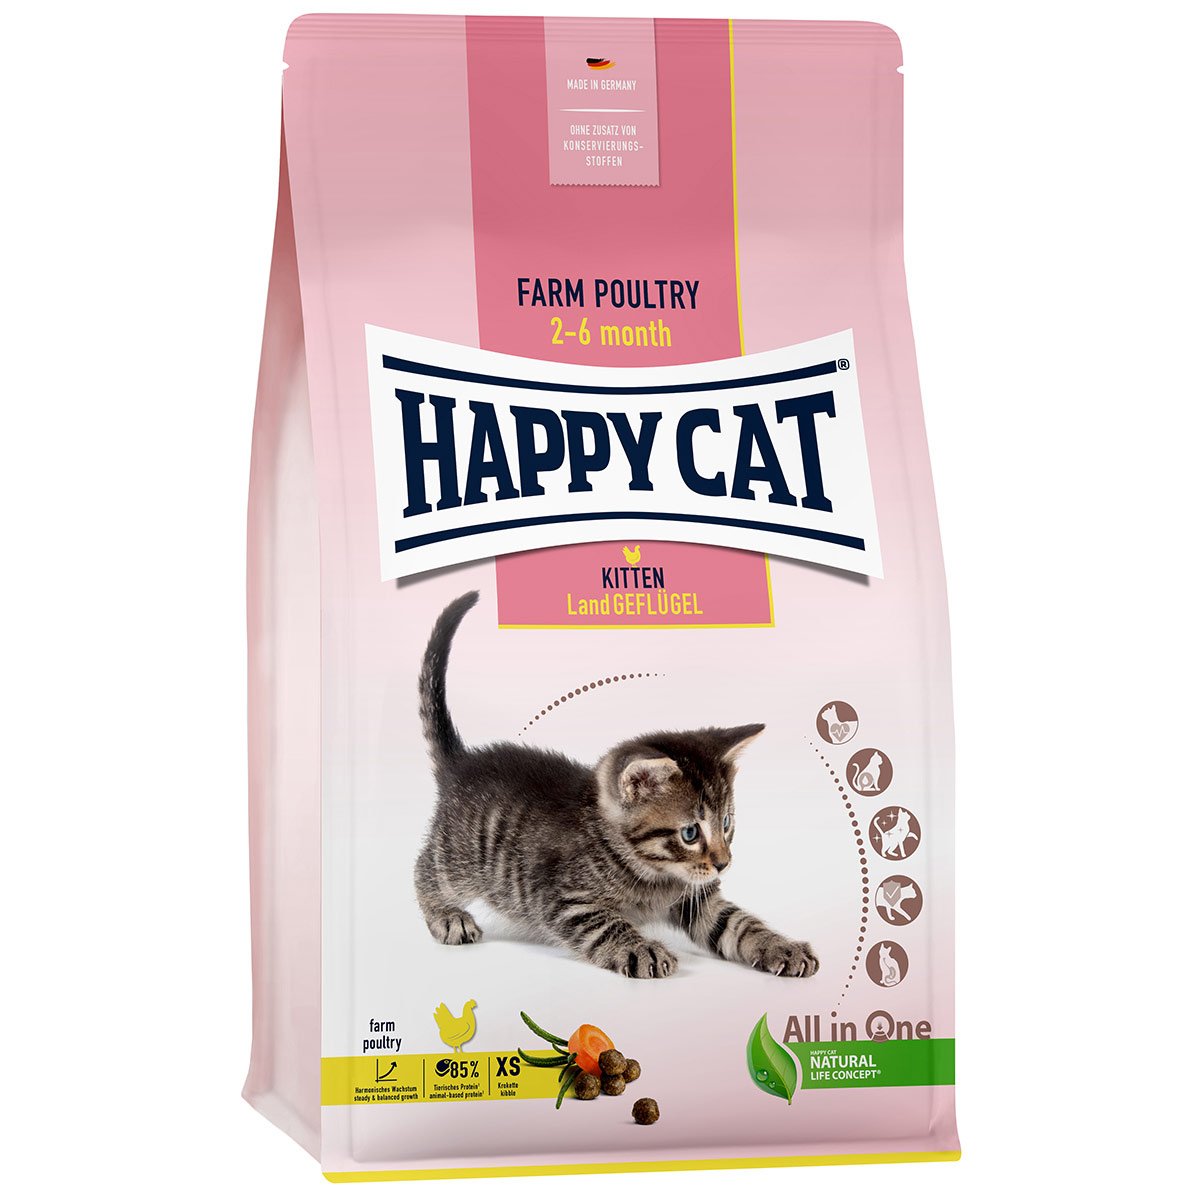 Happy Cat Young Kitten Land Geflügel 1,3kg von Happy Cat